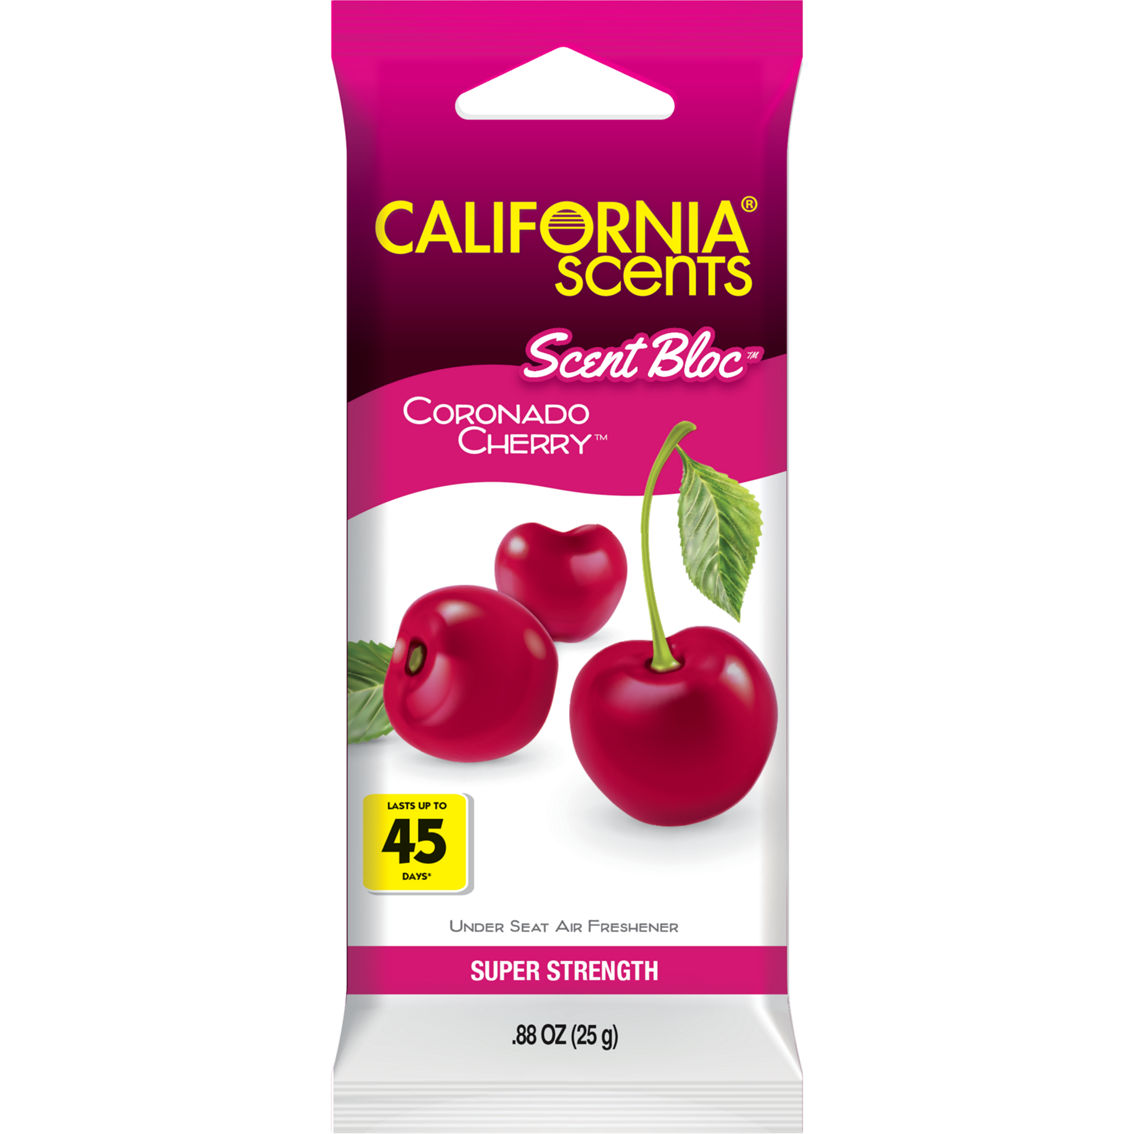 California Scents California Scents Car Scents Spillproof Canister Air  Freshener Coronado Cherry